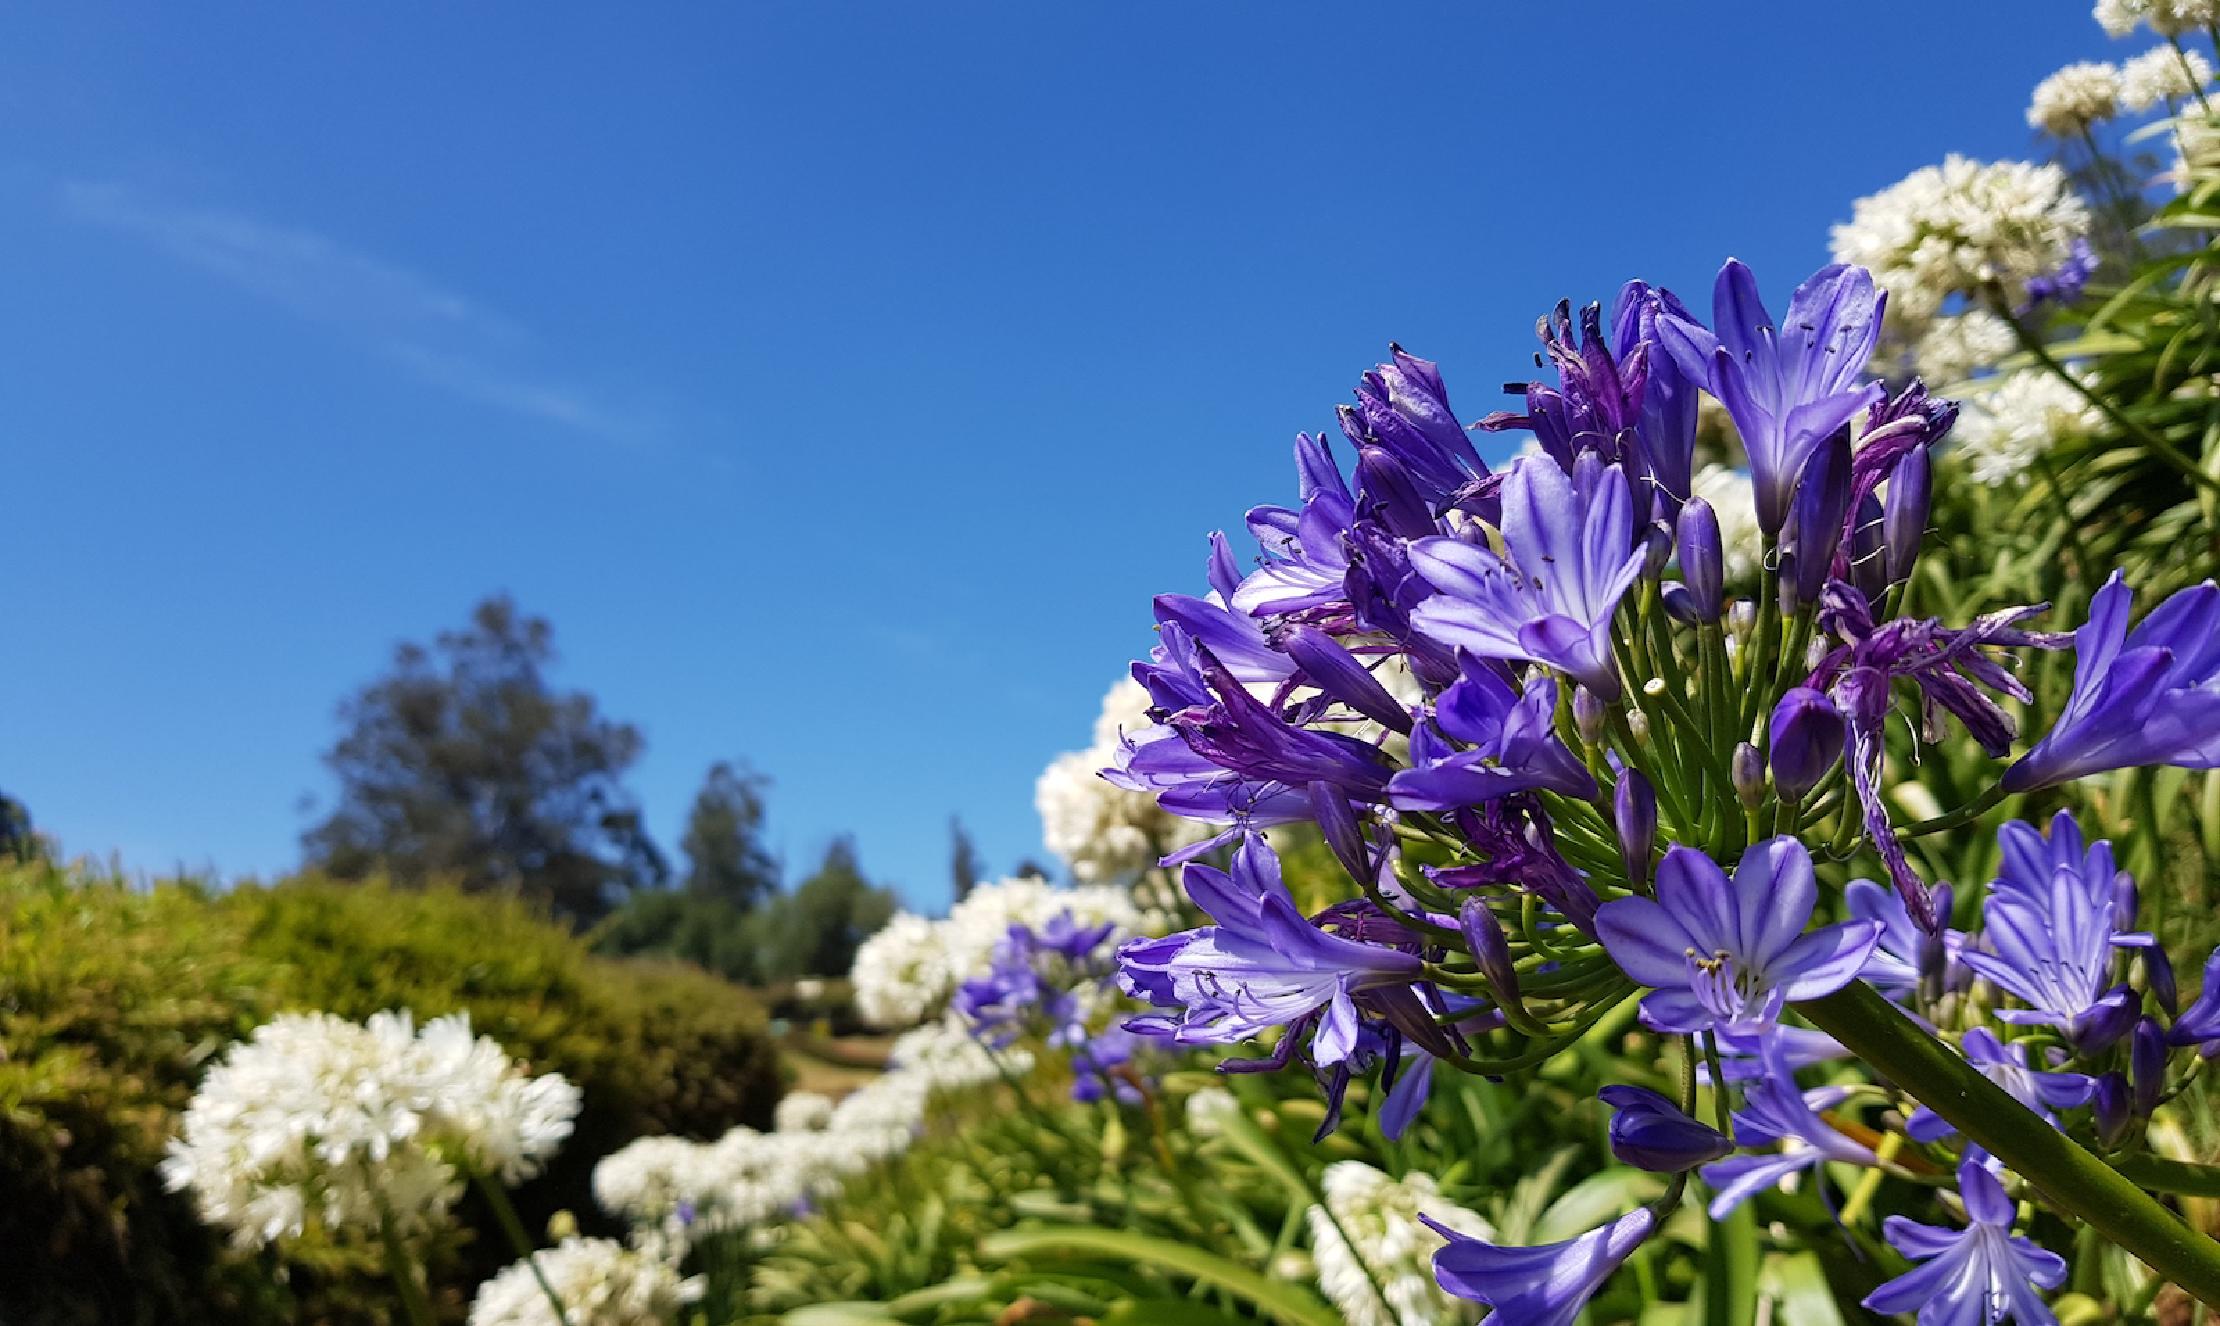 Garden - purple flowers against blue sky